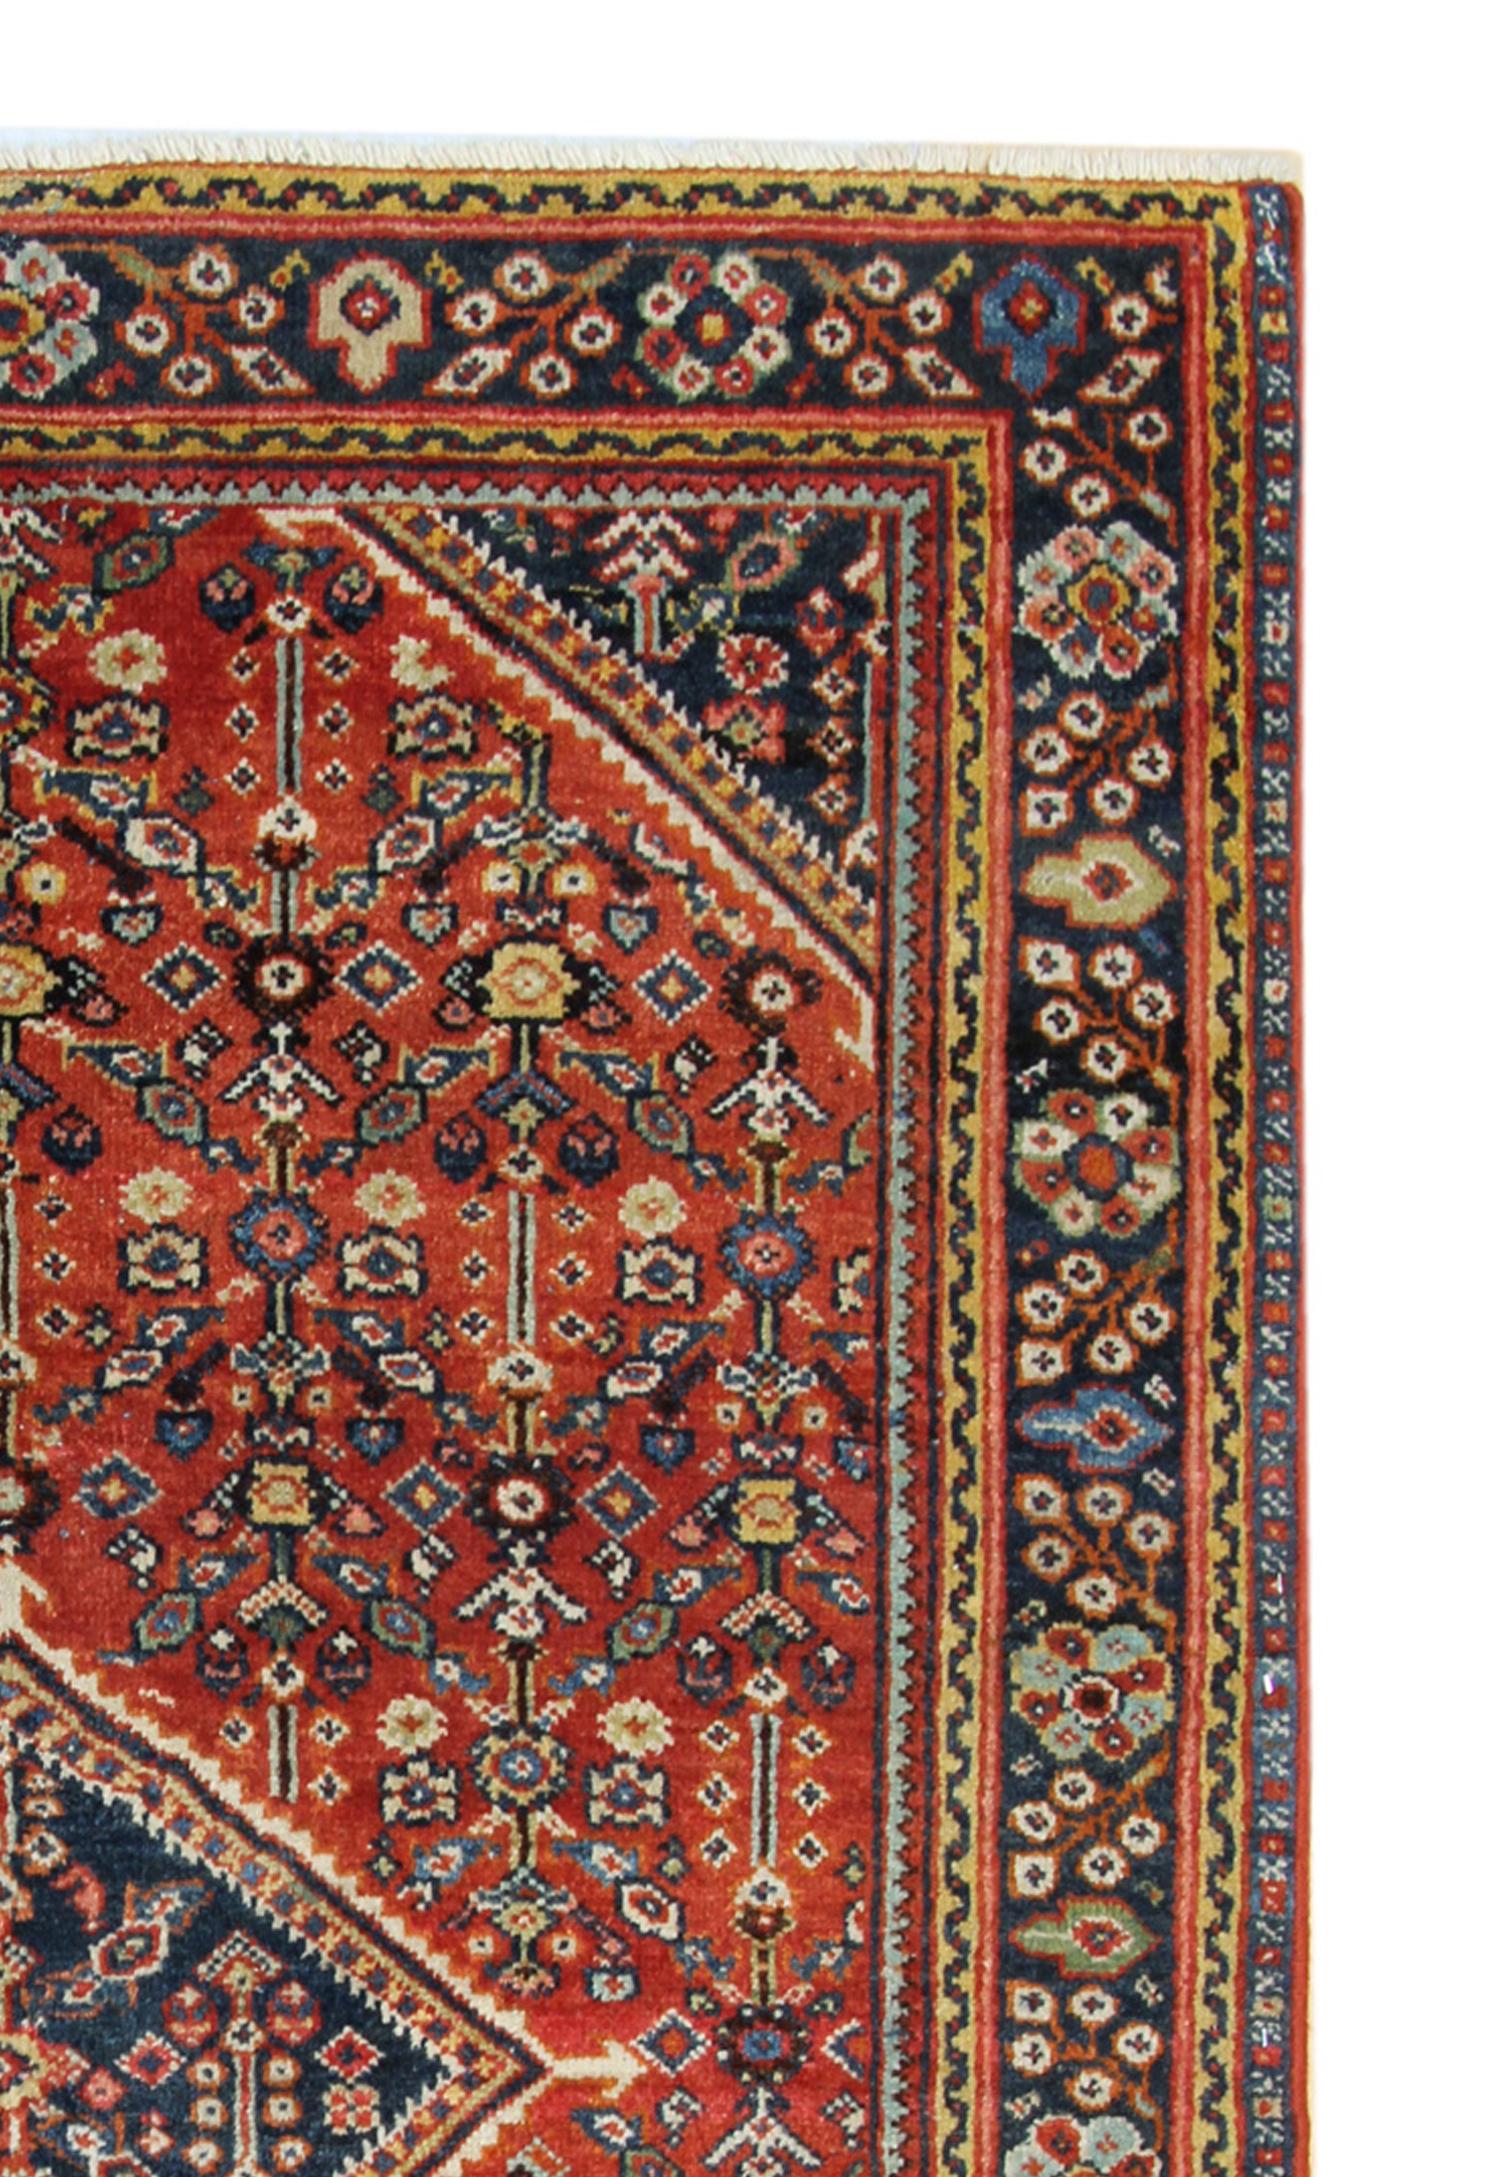 Vegetable Dyed Rustic Handmade Oriental Rug Geometric Rust Wool Living Room Carpet 132x195cm For Sale